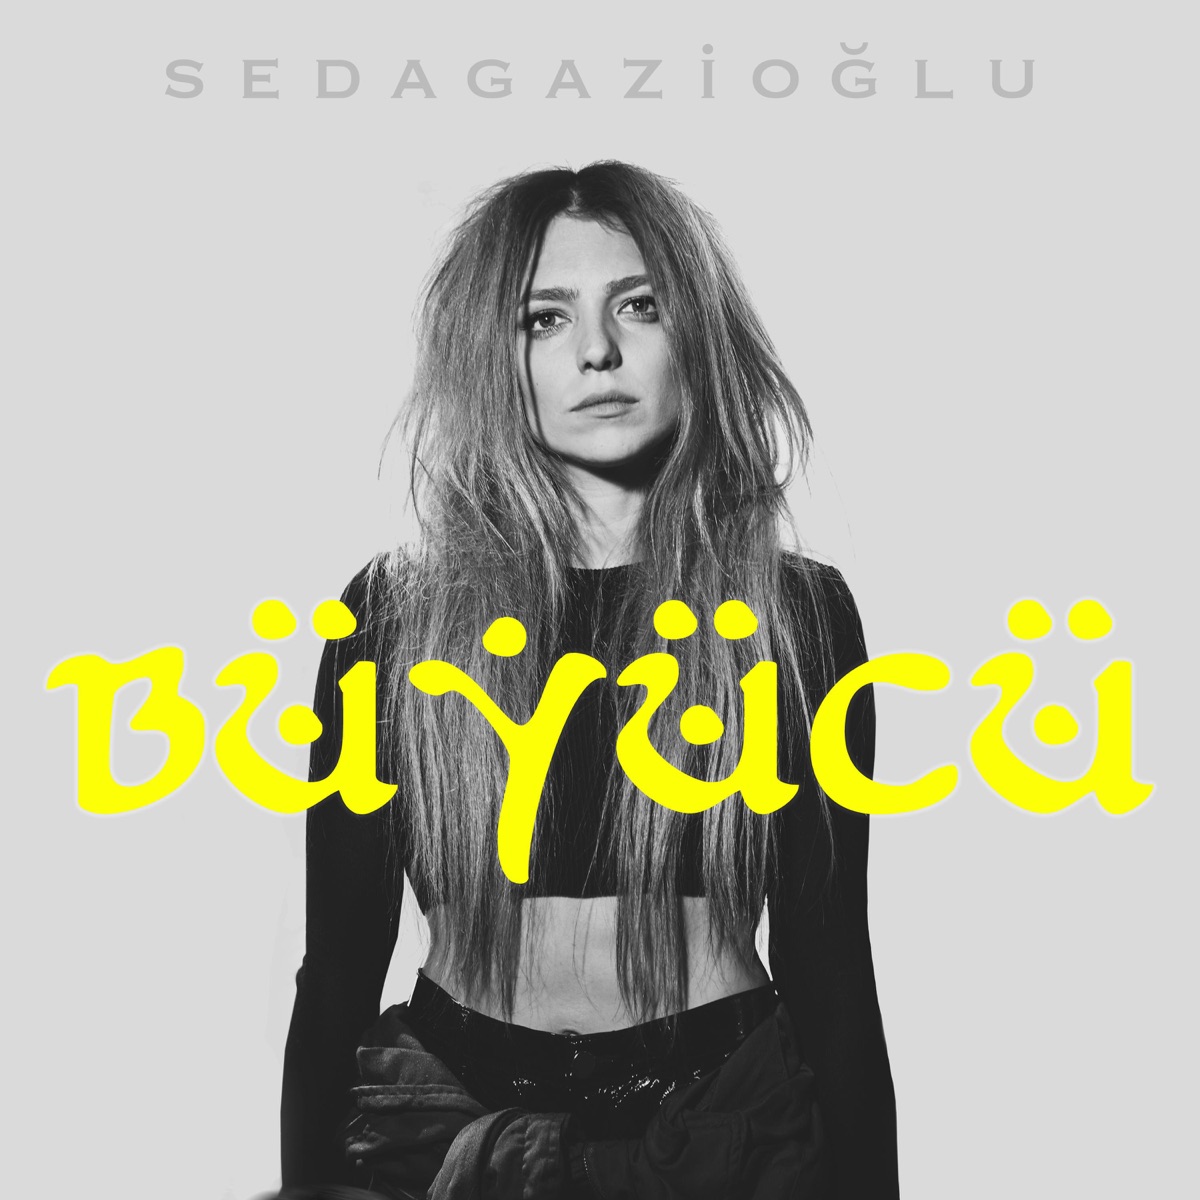 Büyücü - Single by Seda Gazioğlu on Apple Music